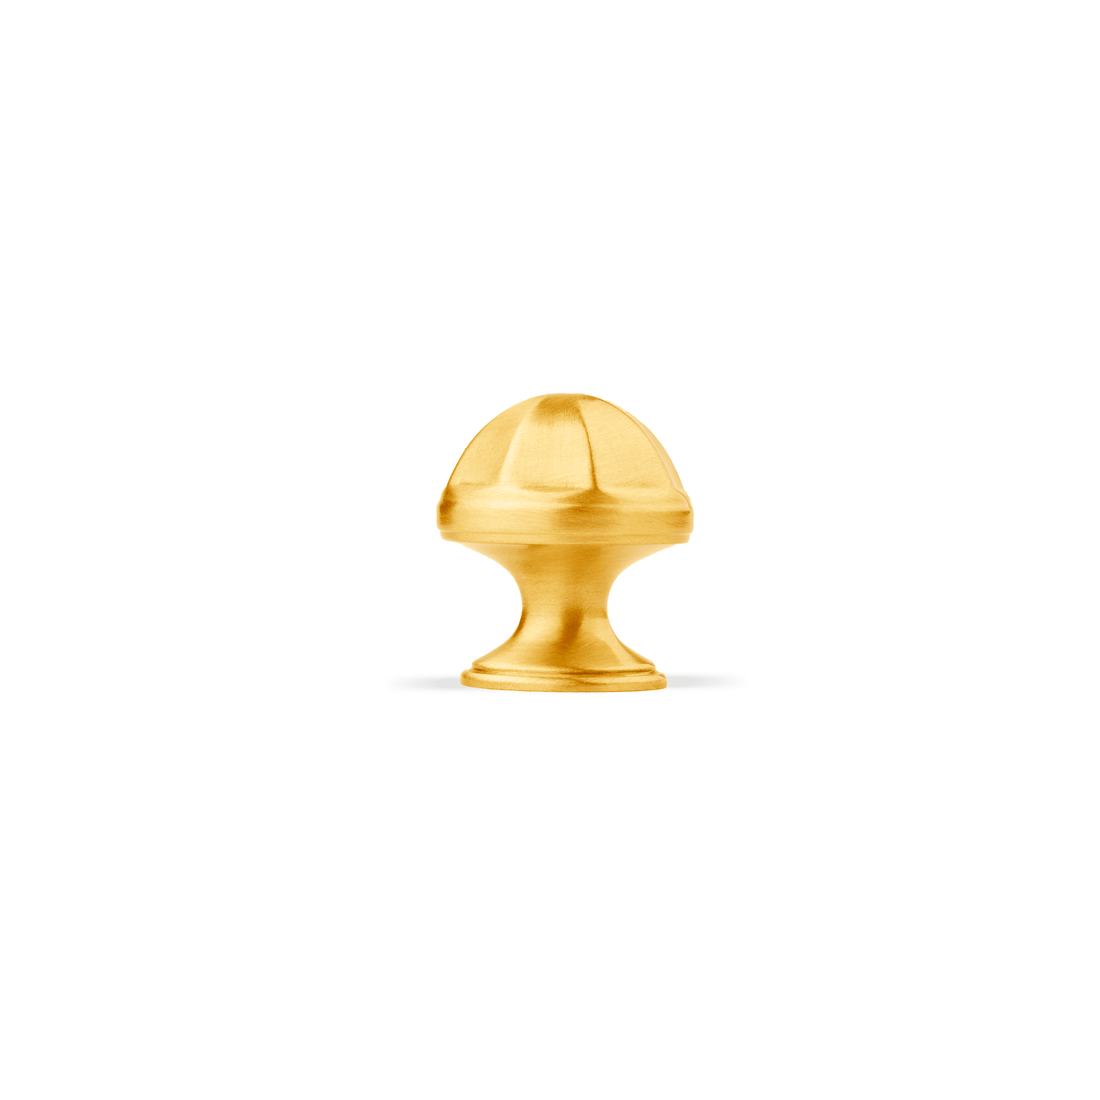 Canopy Knob Knob 30mm / Gold / Brass - M A N T A R A